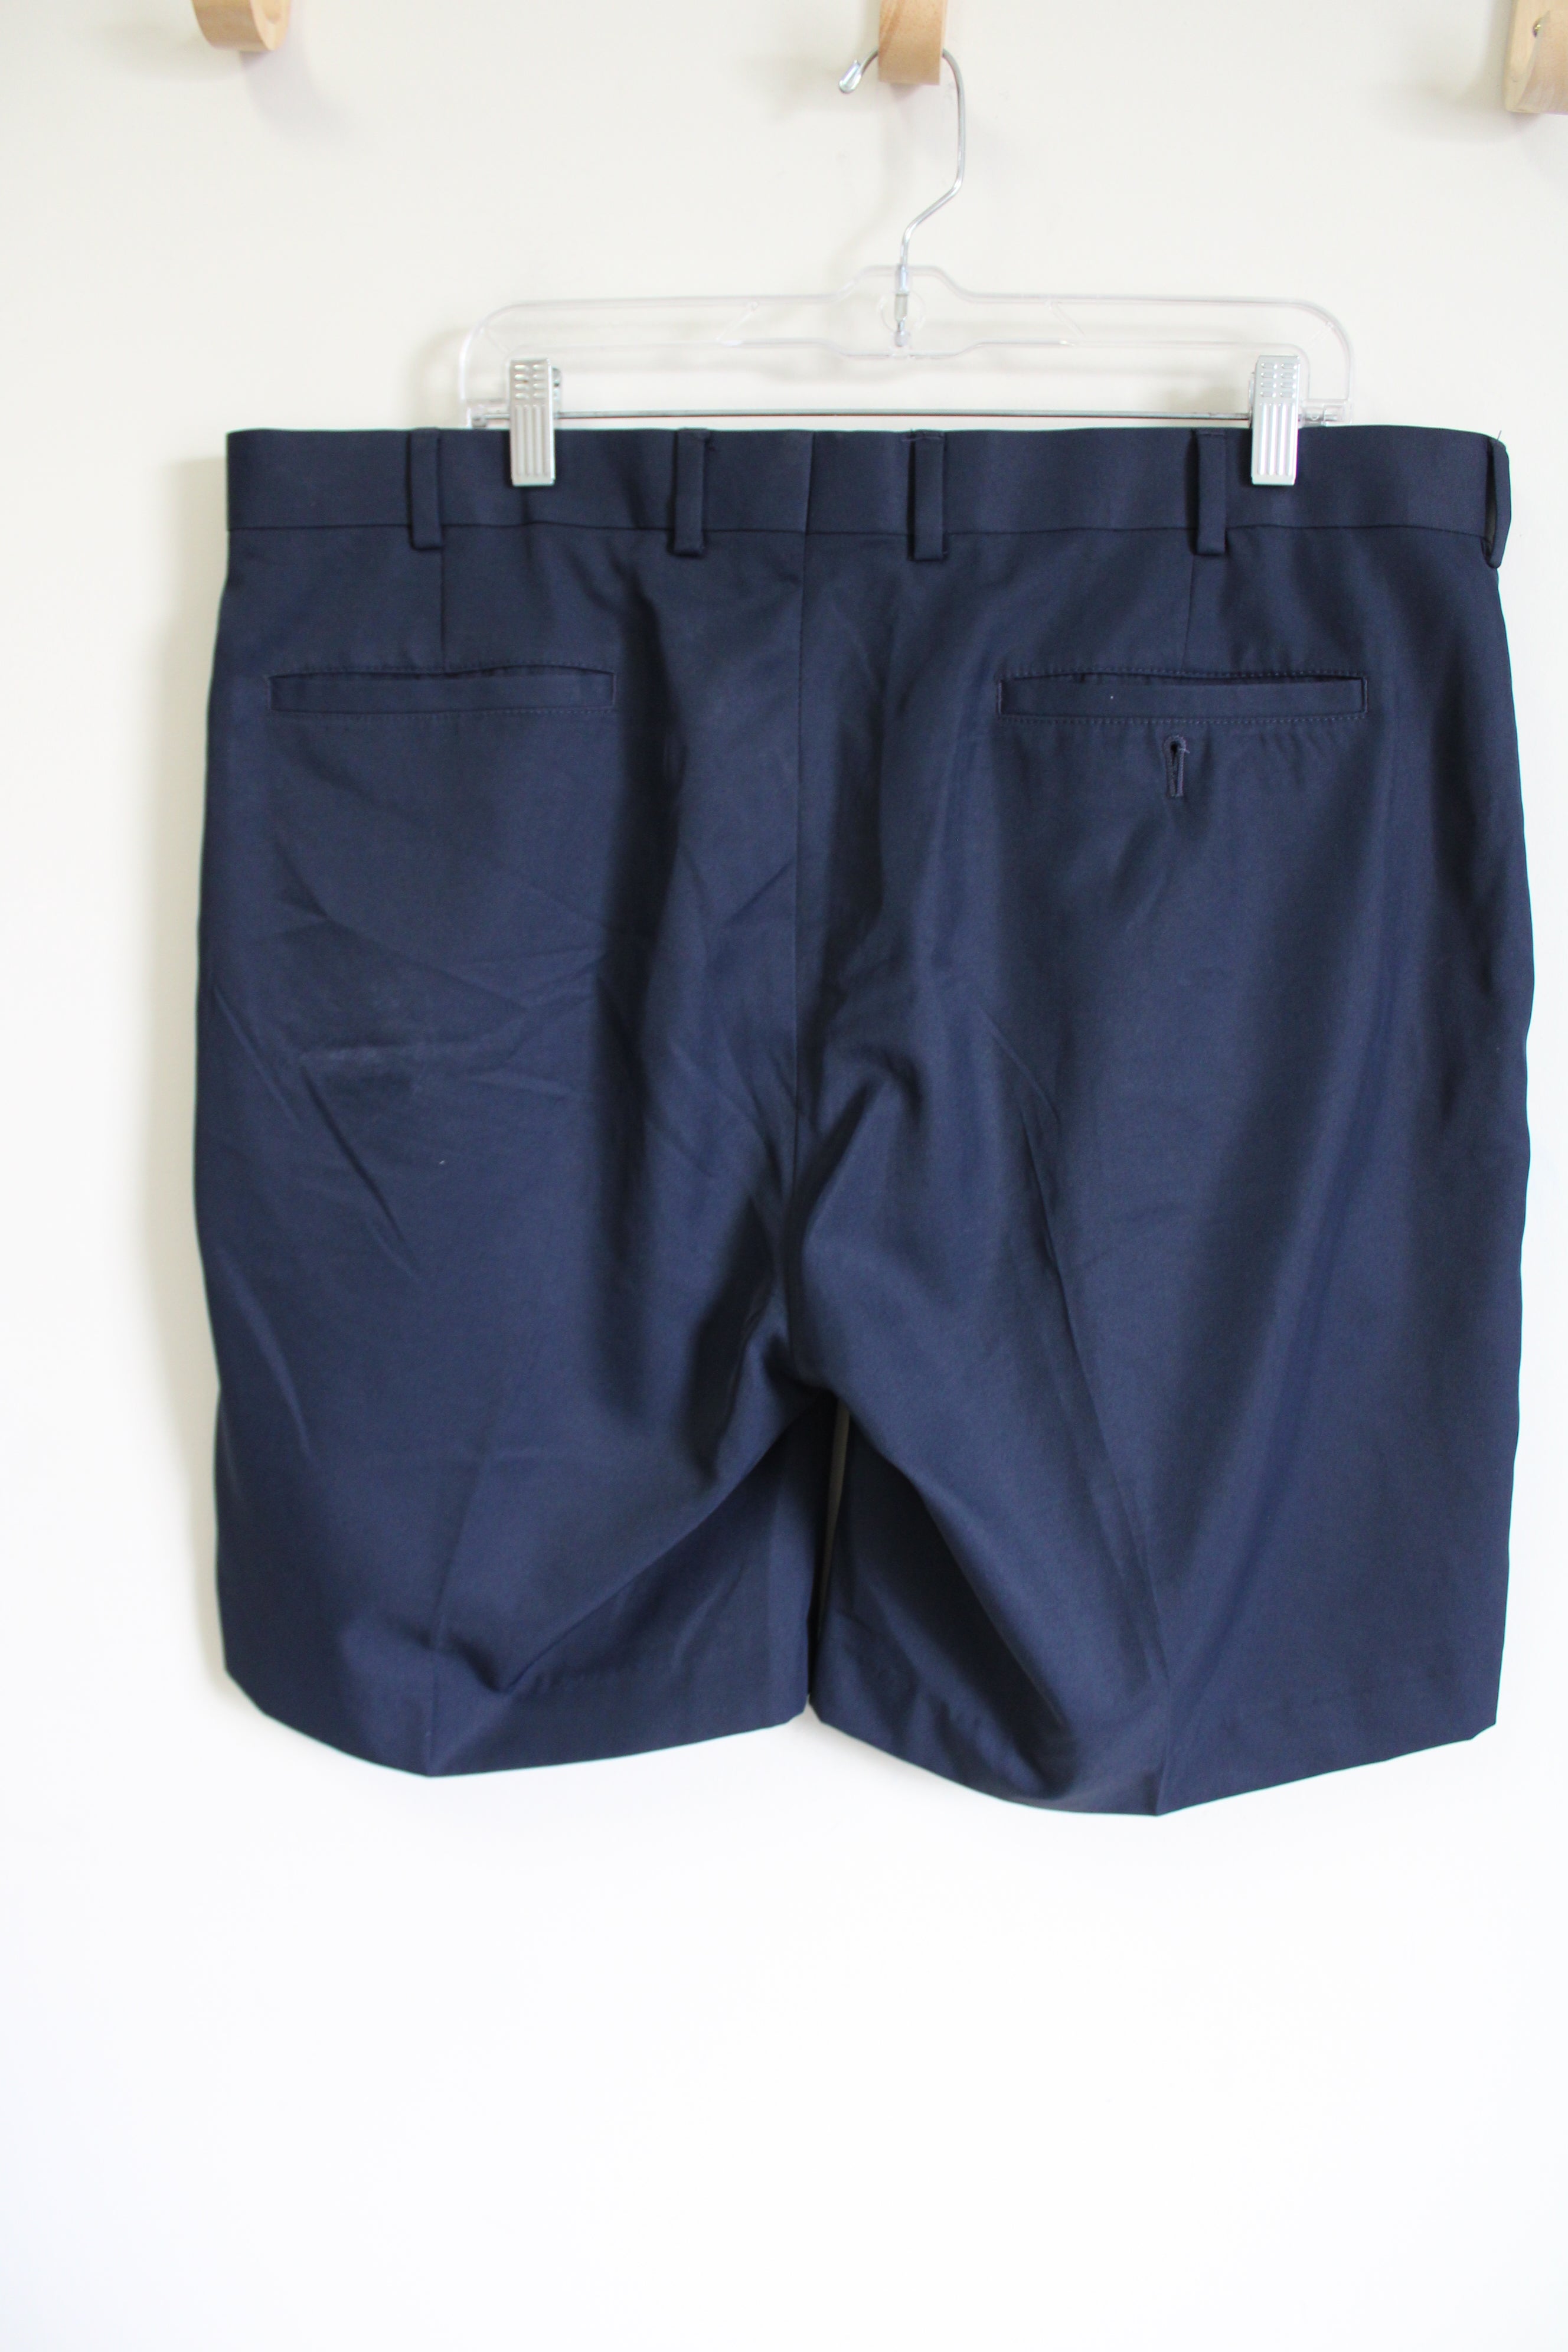 Louis Raphael Men's Pants - Tan - 34